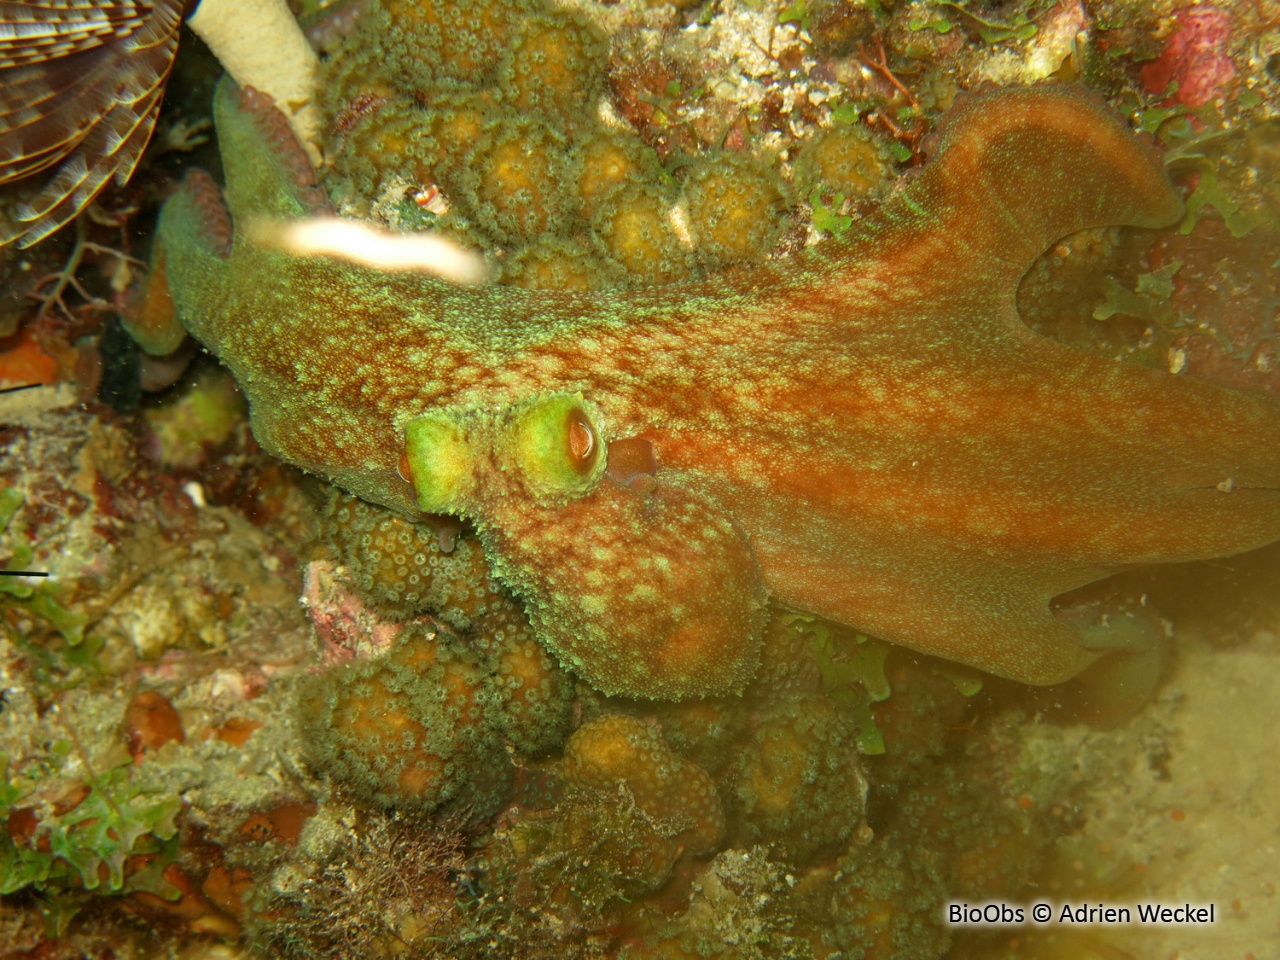 Poulpe de récif des caraïbes - Octopus briareus - Adrien Weckel - BioObs